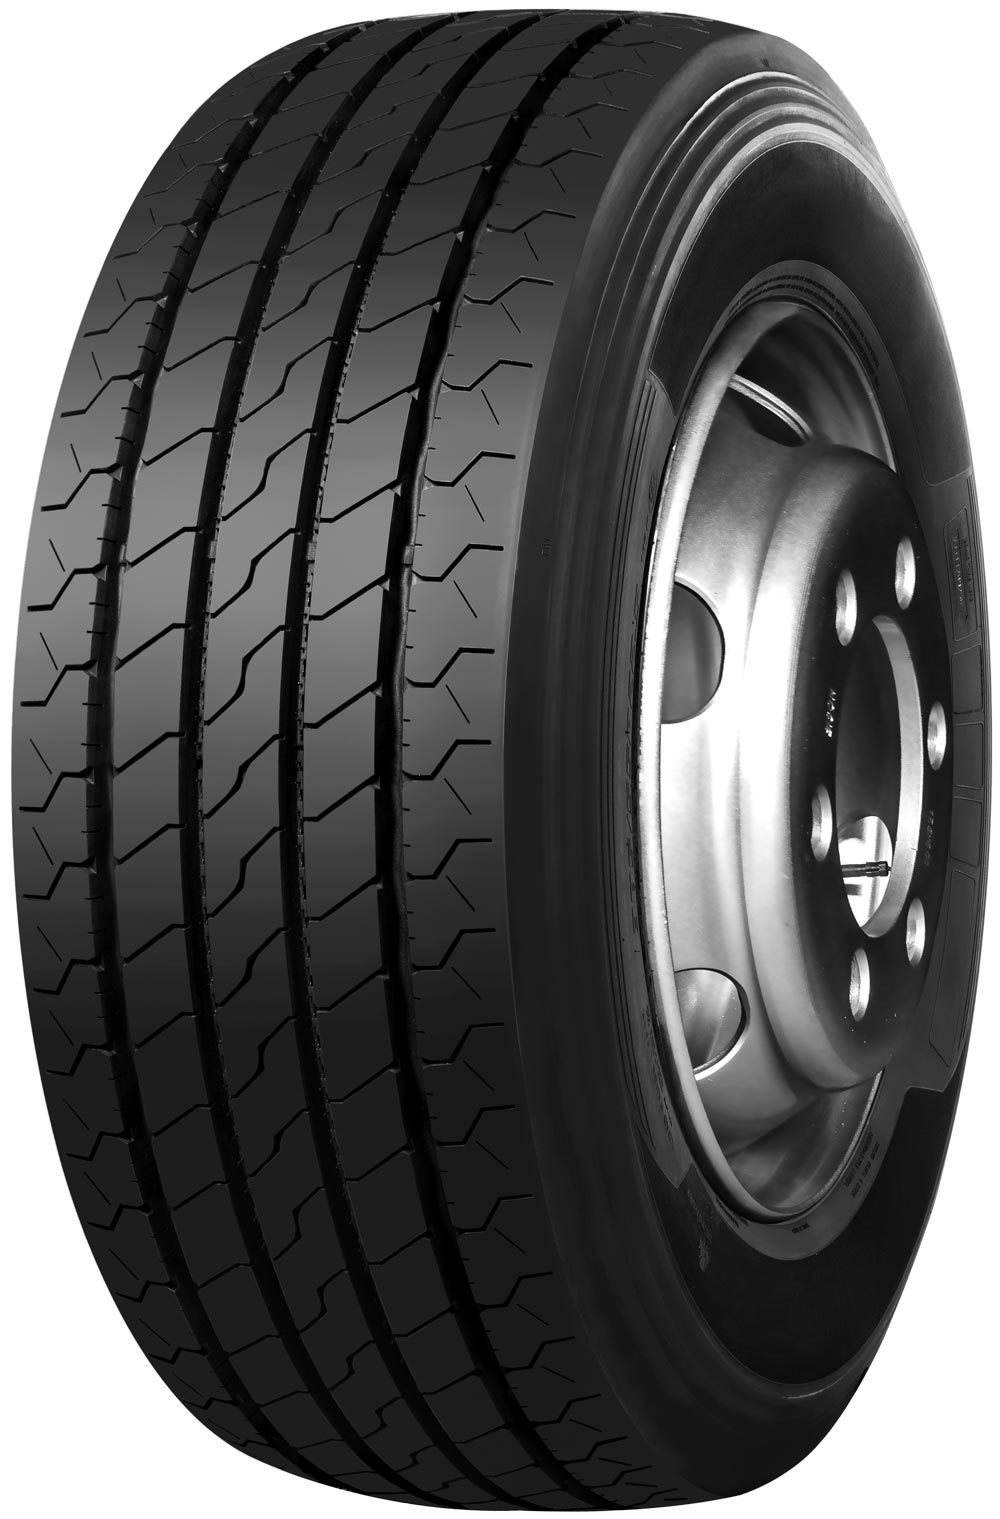 product_type-heavy_tires TRAZANO NOVO TRANS S 16 TL 245/70 R19.5 136M